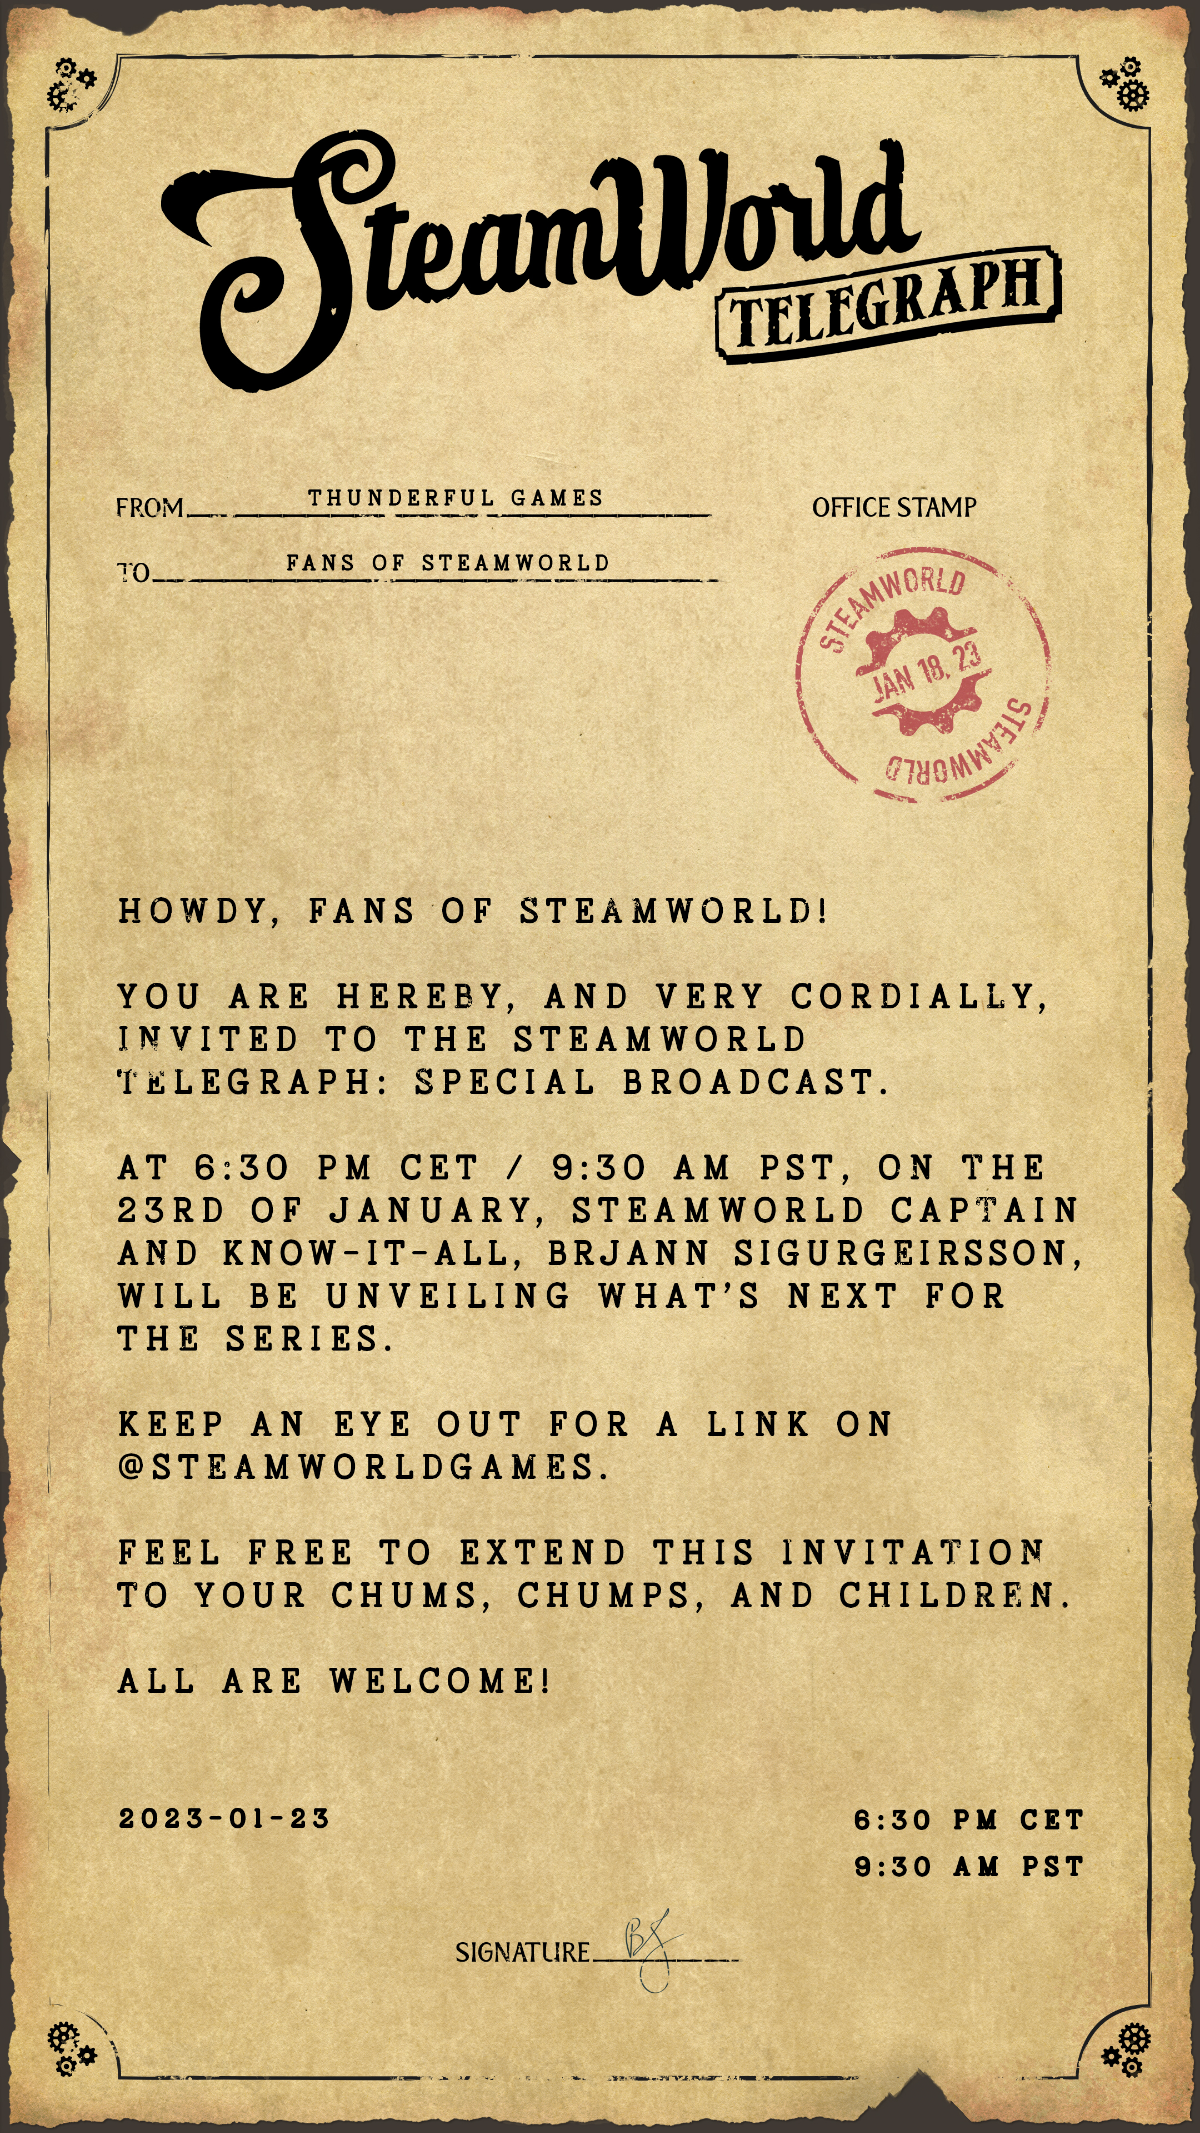 SteamWorld Telegraph: Special Broadcast Invite